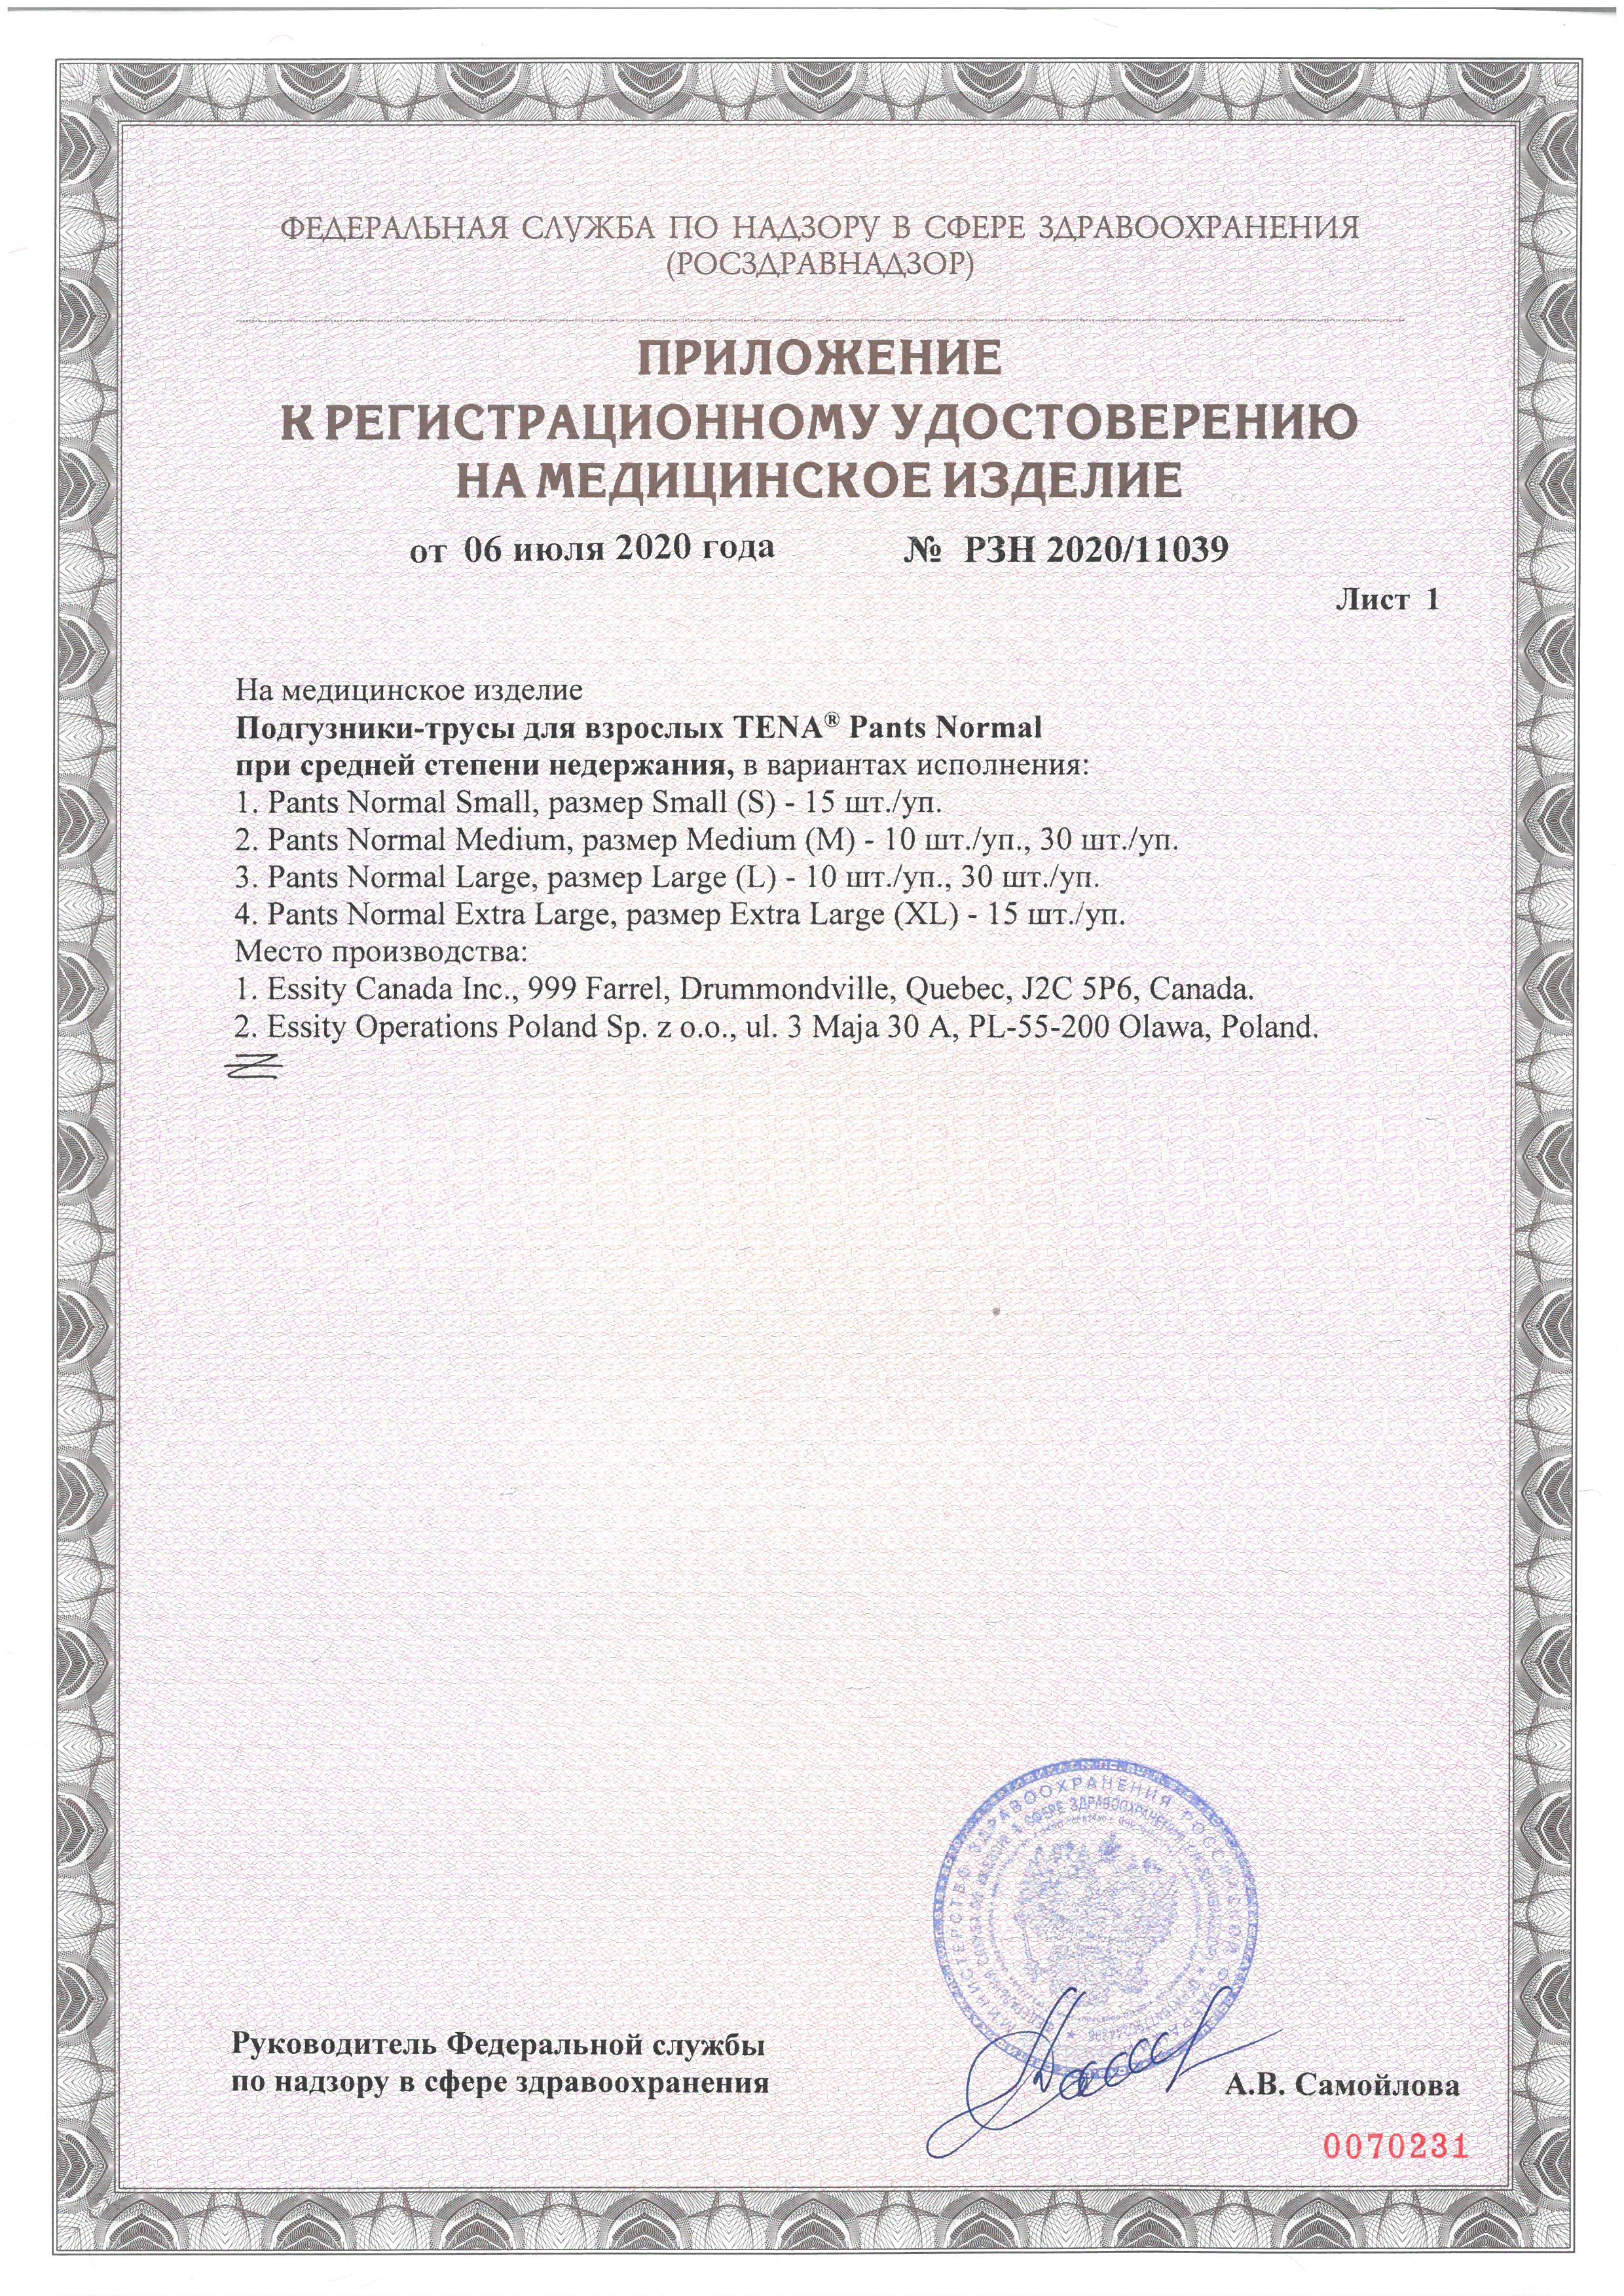 Подгузники-трусы для взрослых Tena Pants Normal сертификат